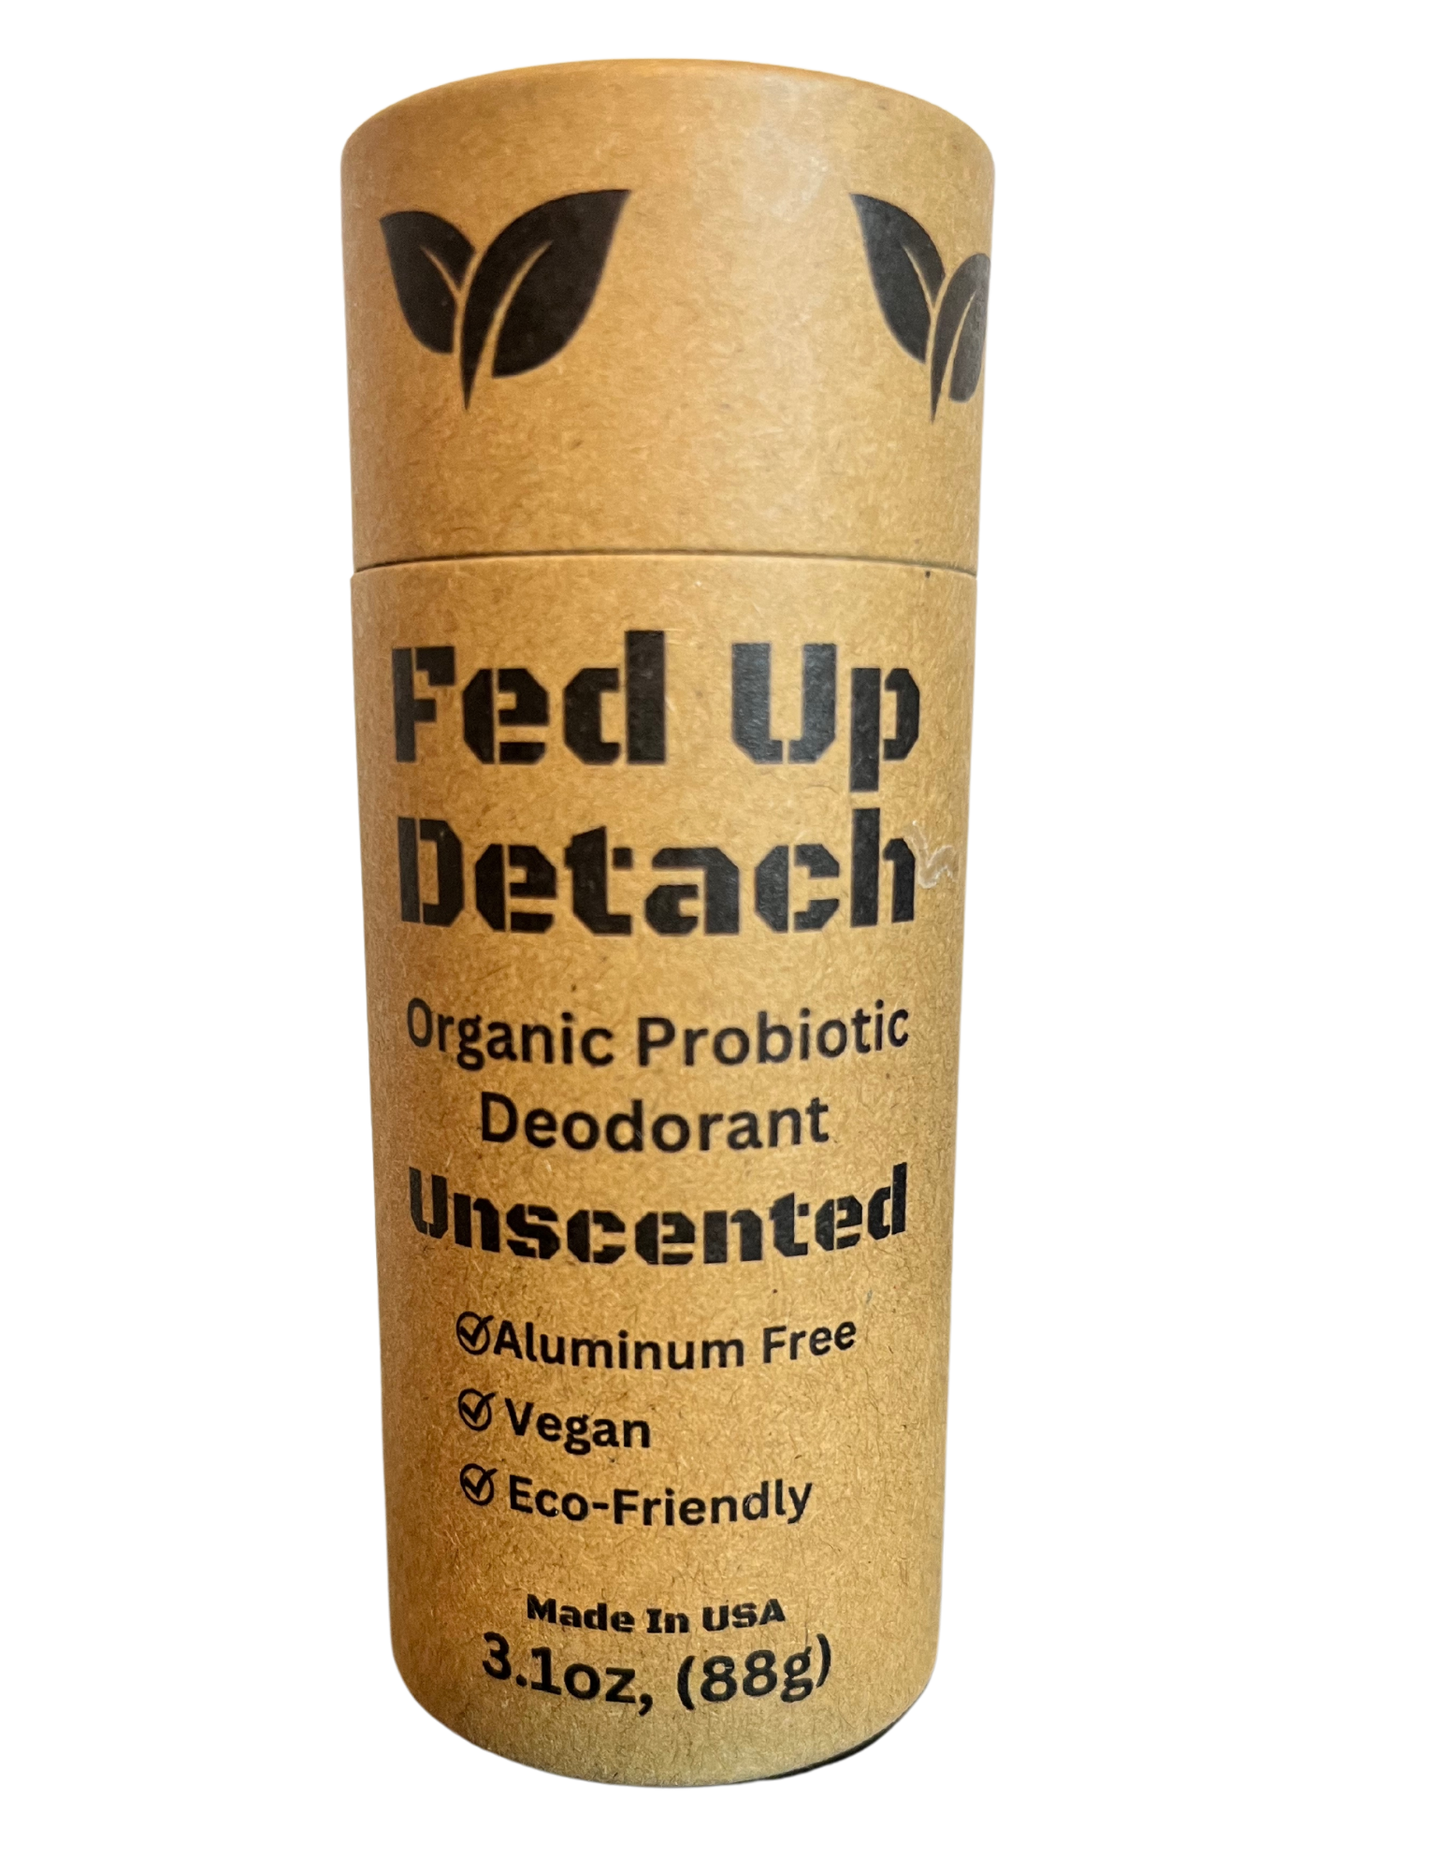 Detach Organic Probiotic Deodorant